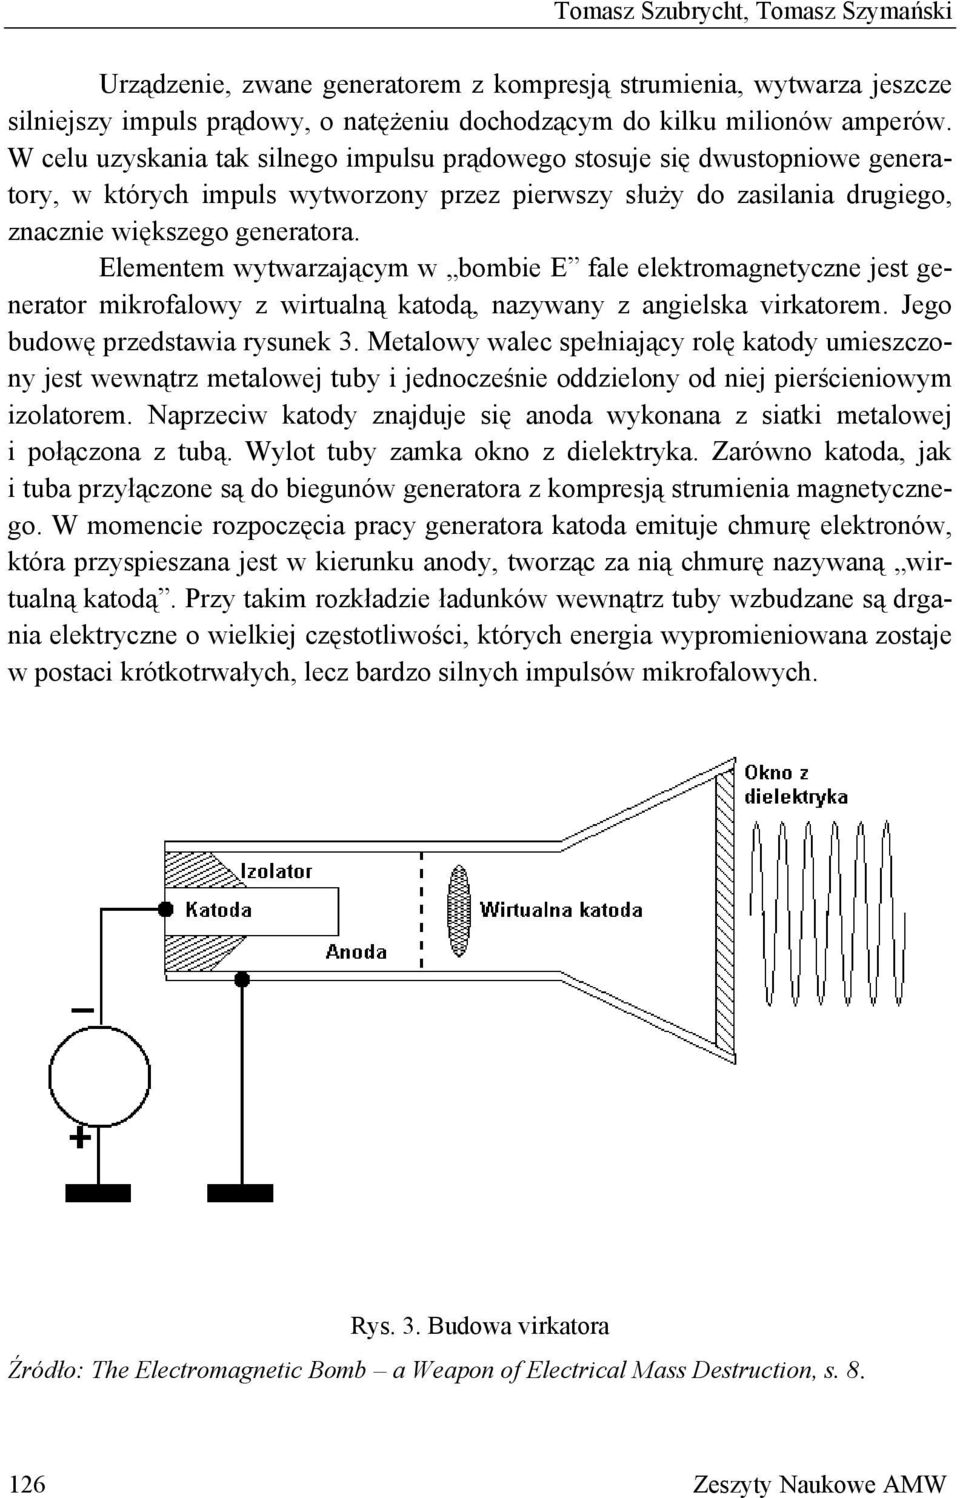 Elementem wytwarzającym w bombie E fale elektromagnetyczne jest generator mikrofalowy z wirtualną katodą, nazywany z angielska virkatorem. Jego budowę przedstawia rysunek 3.